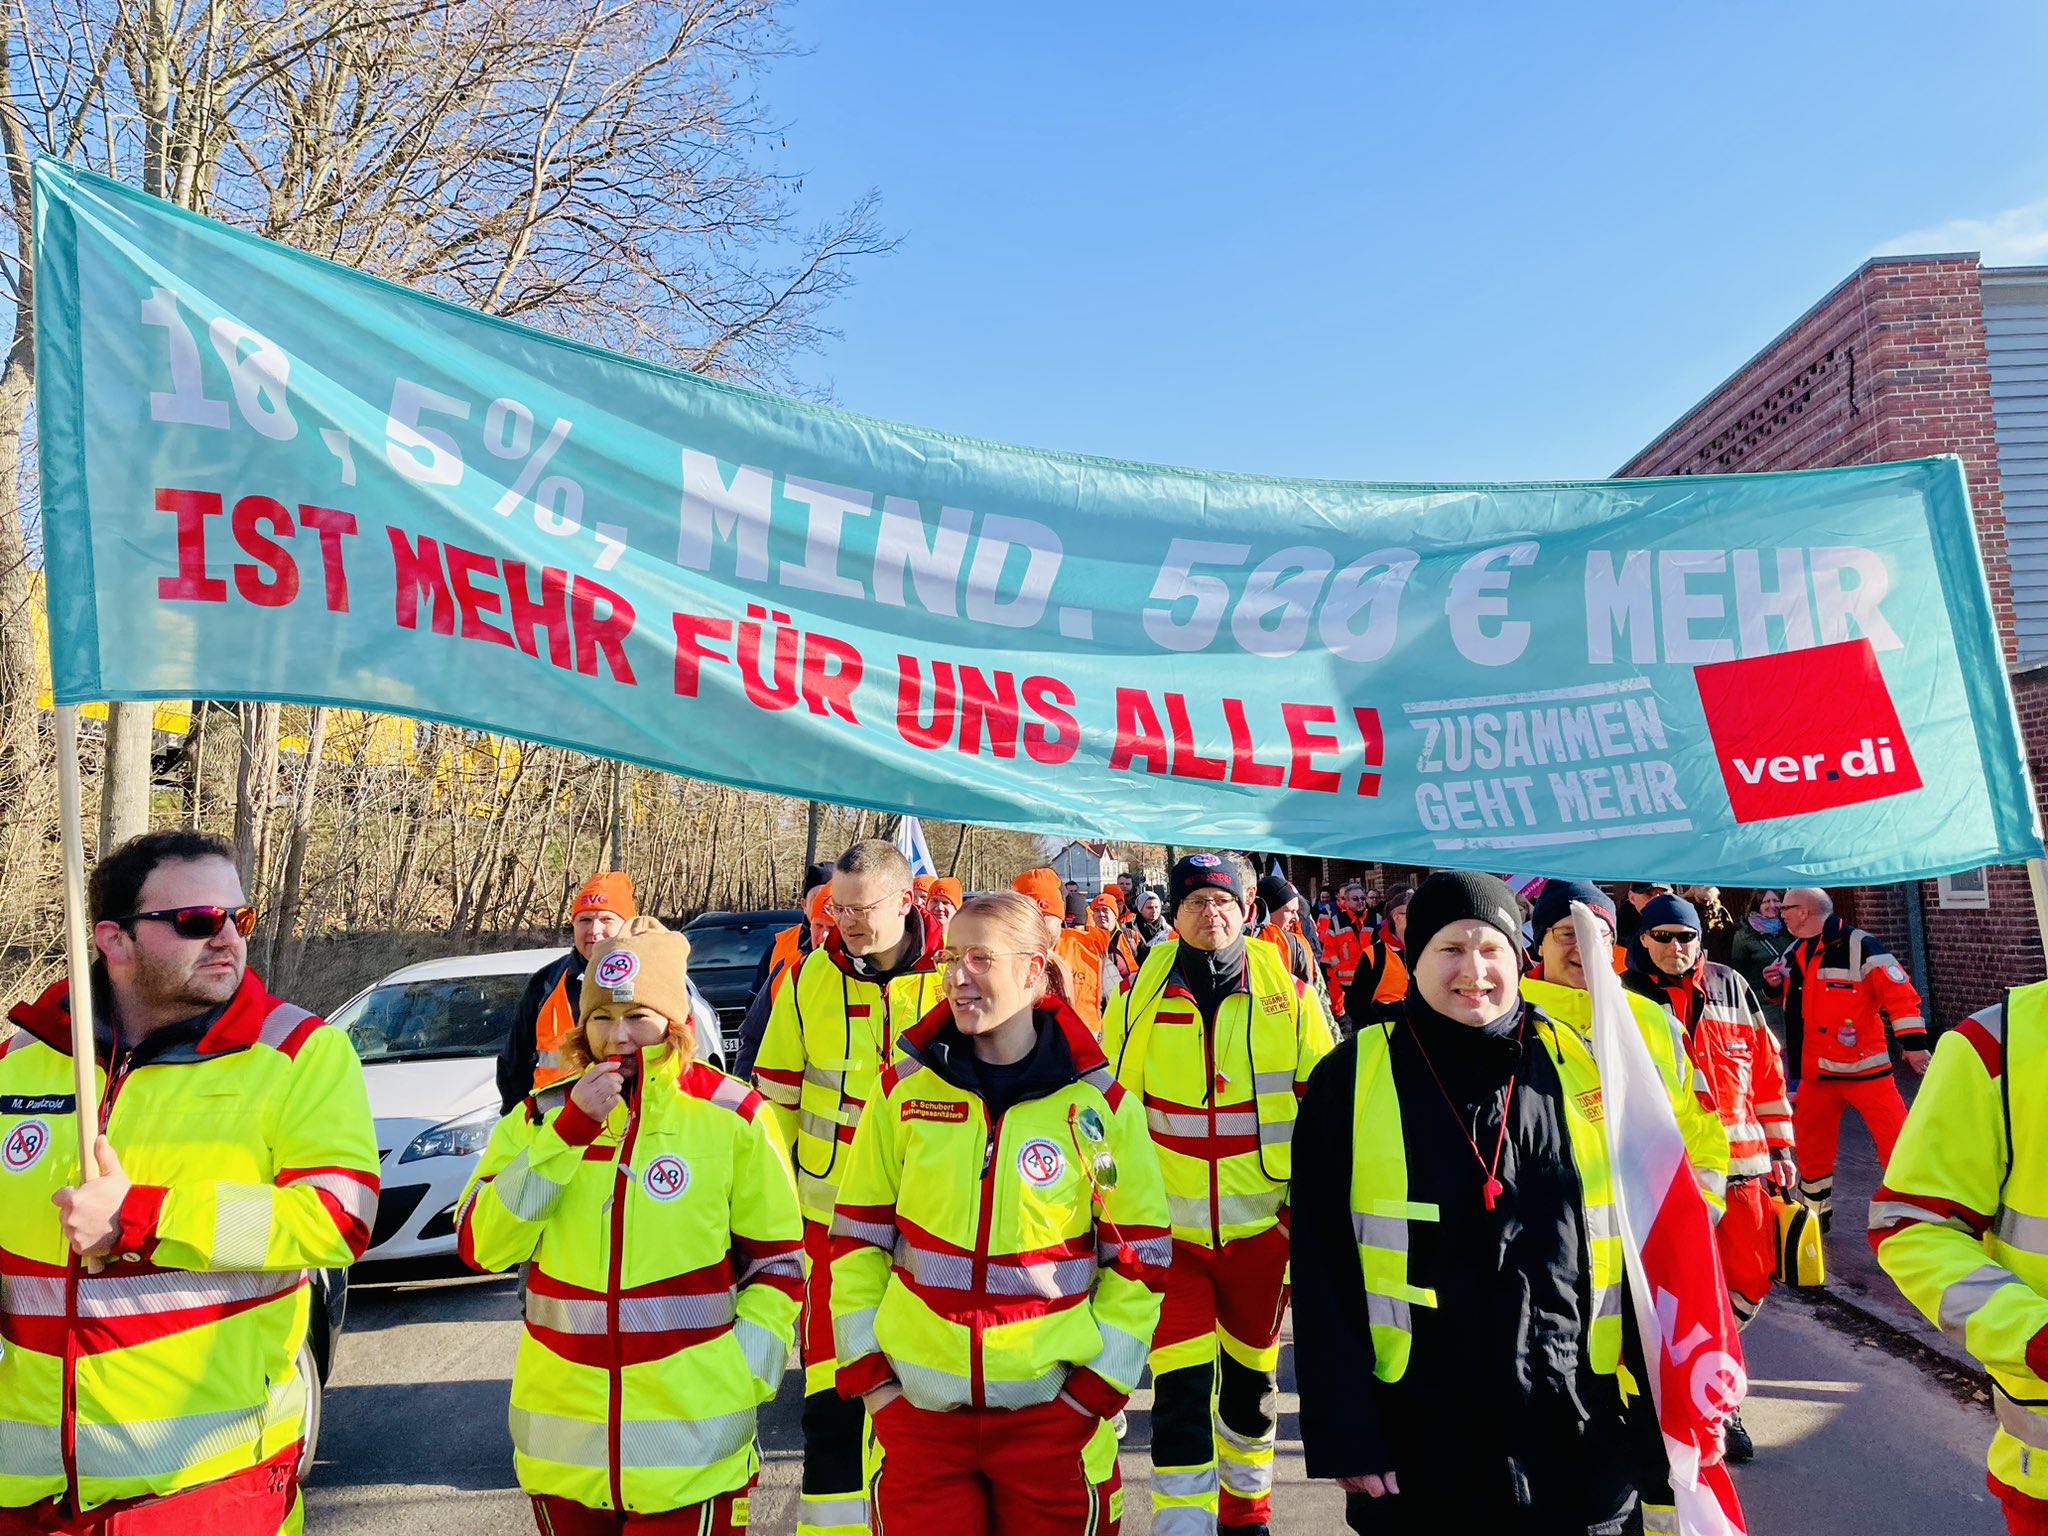 爆炸性的罢工行动激励了工人阶级的战斗情绪。//图片来源：ver.di Westfalen, Twitter